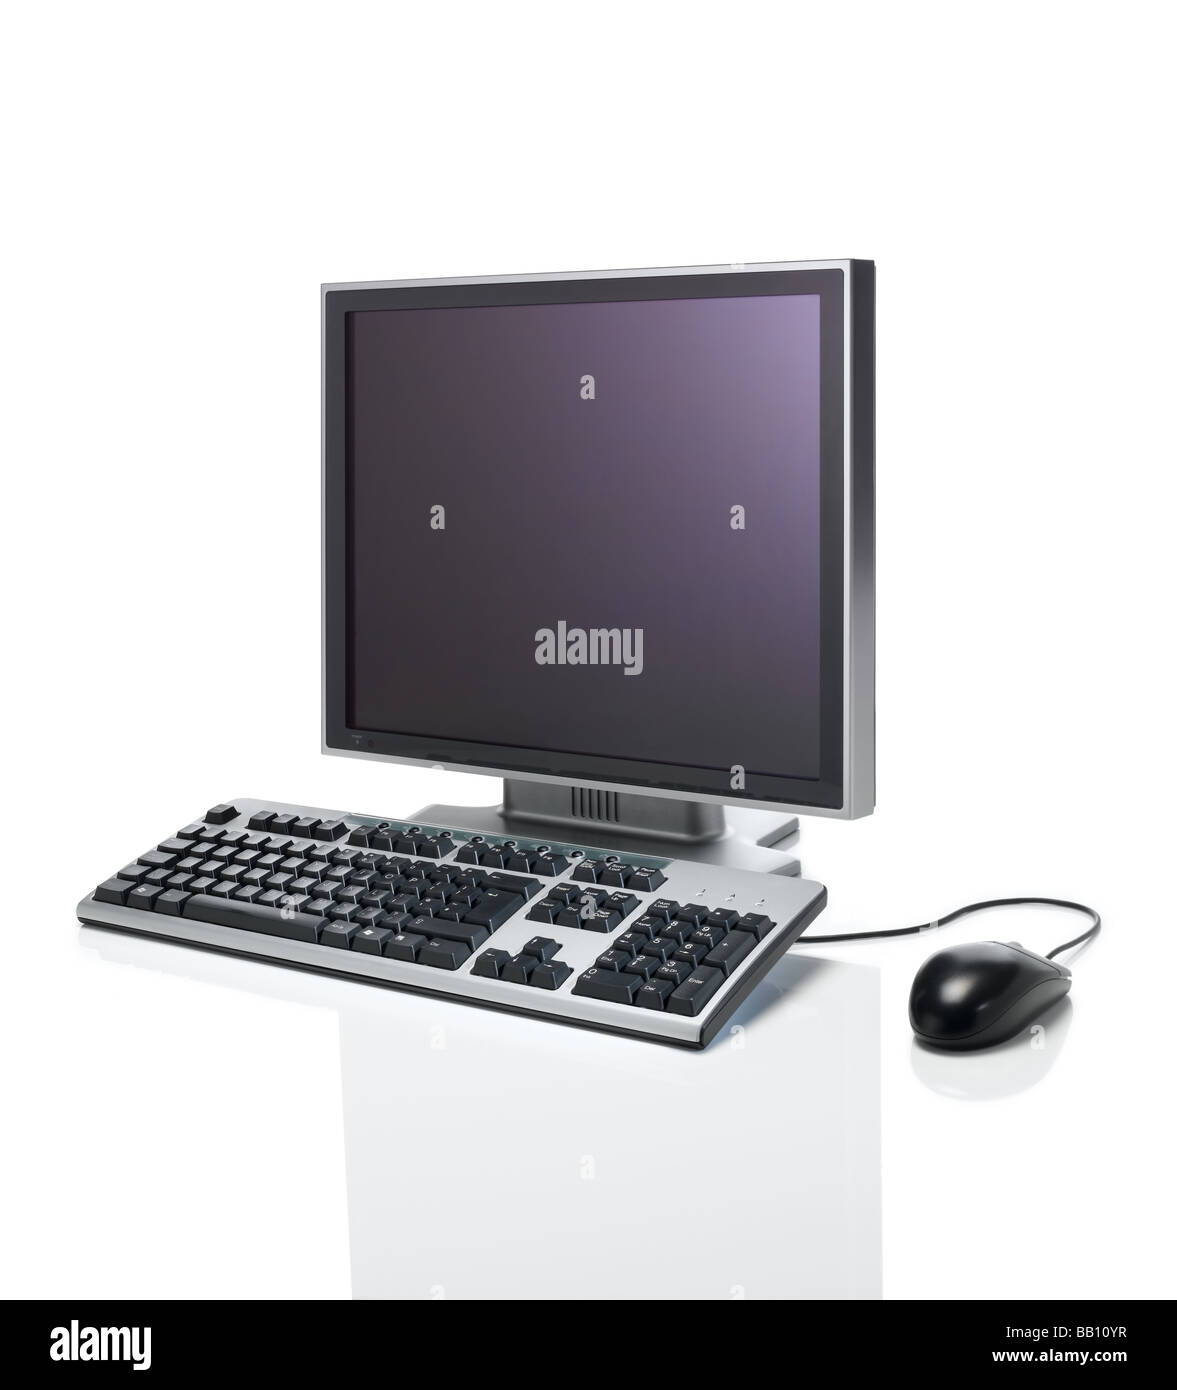 Un clavier d'ordinateur, de la souris et moniteur de télévision Banque D'Images